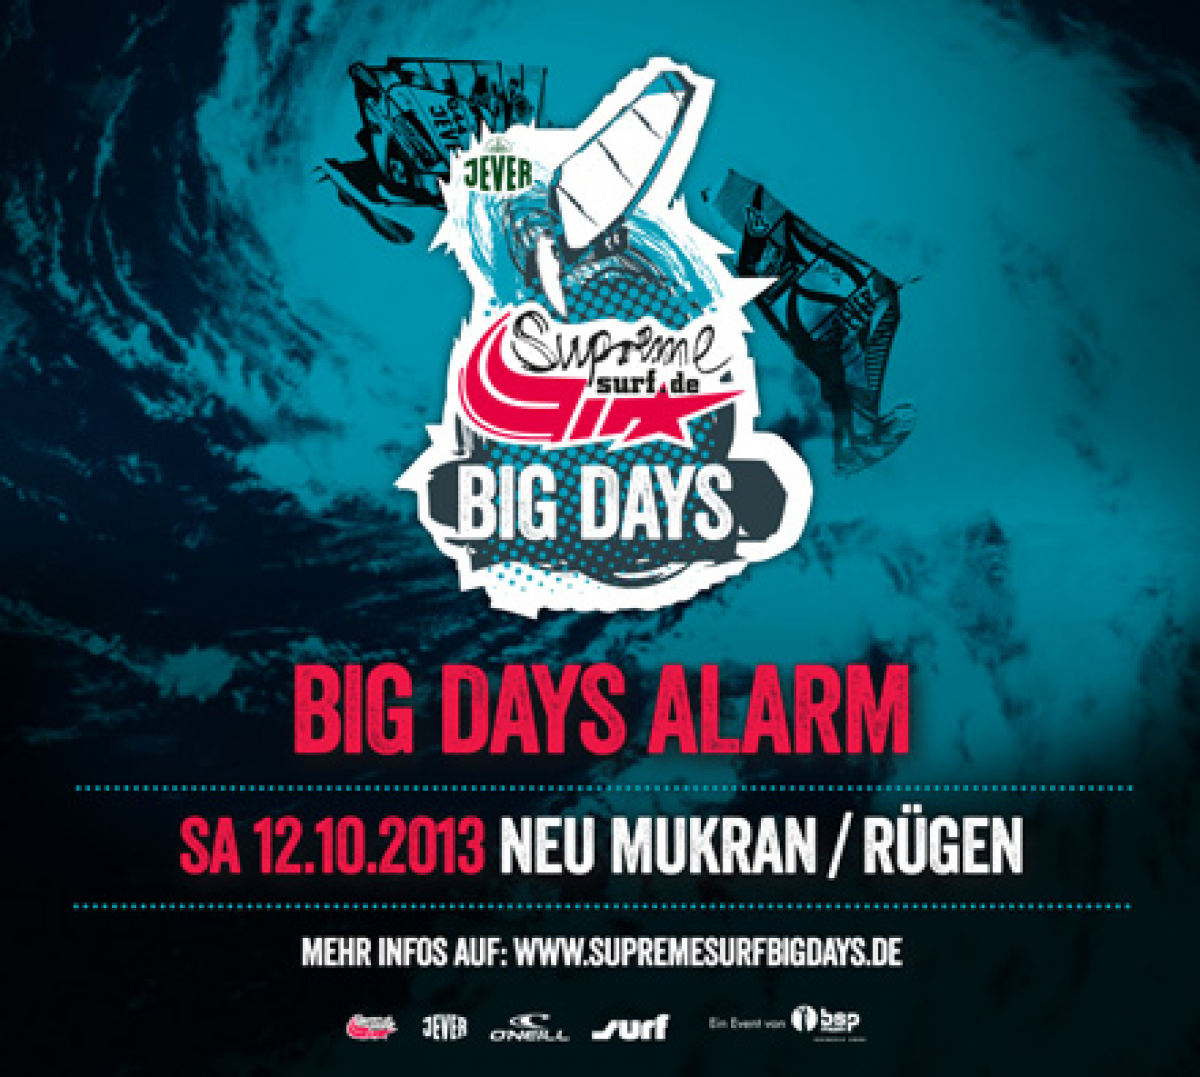 Big Days Alarm - Der Event findet statt